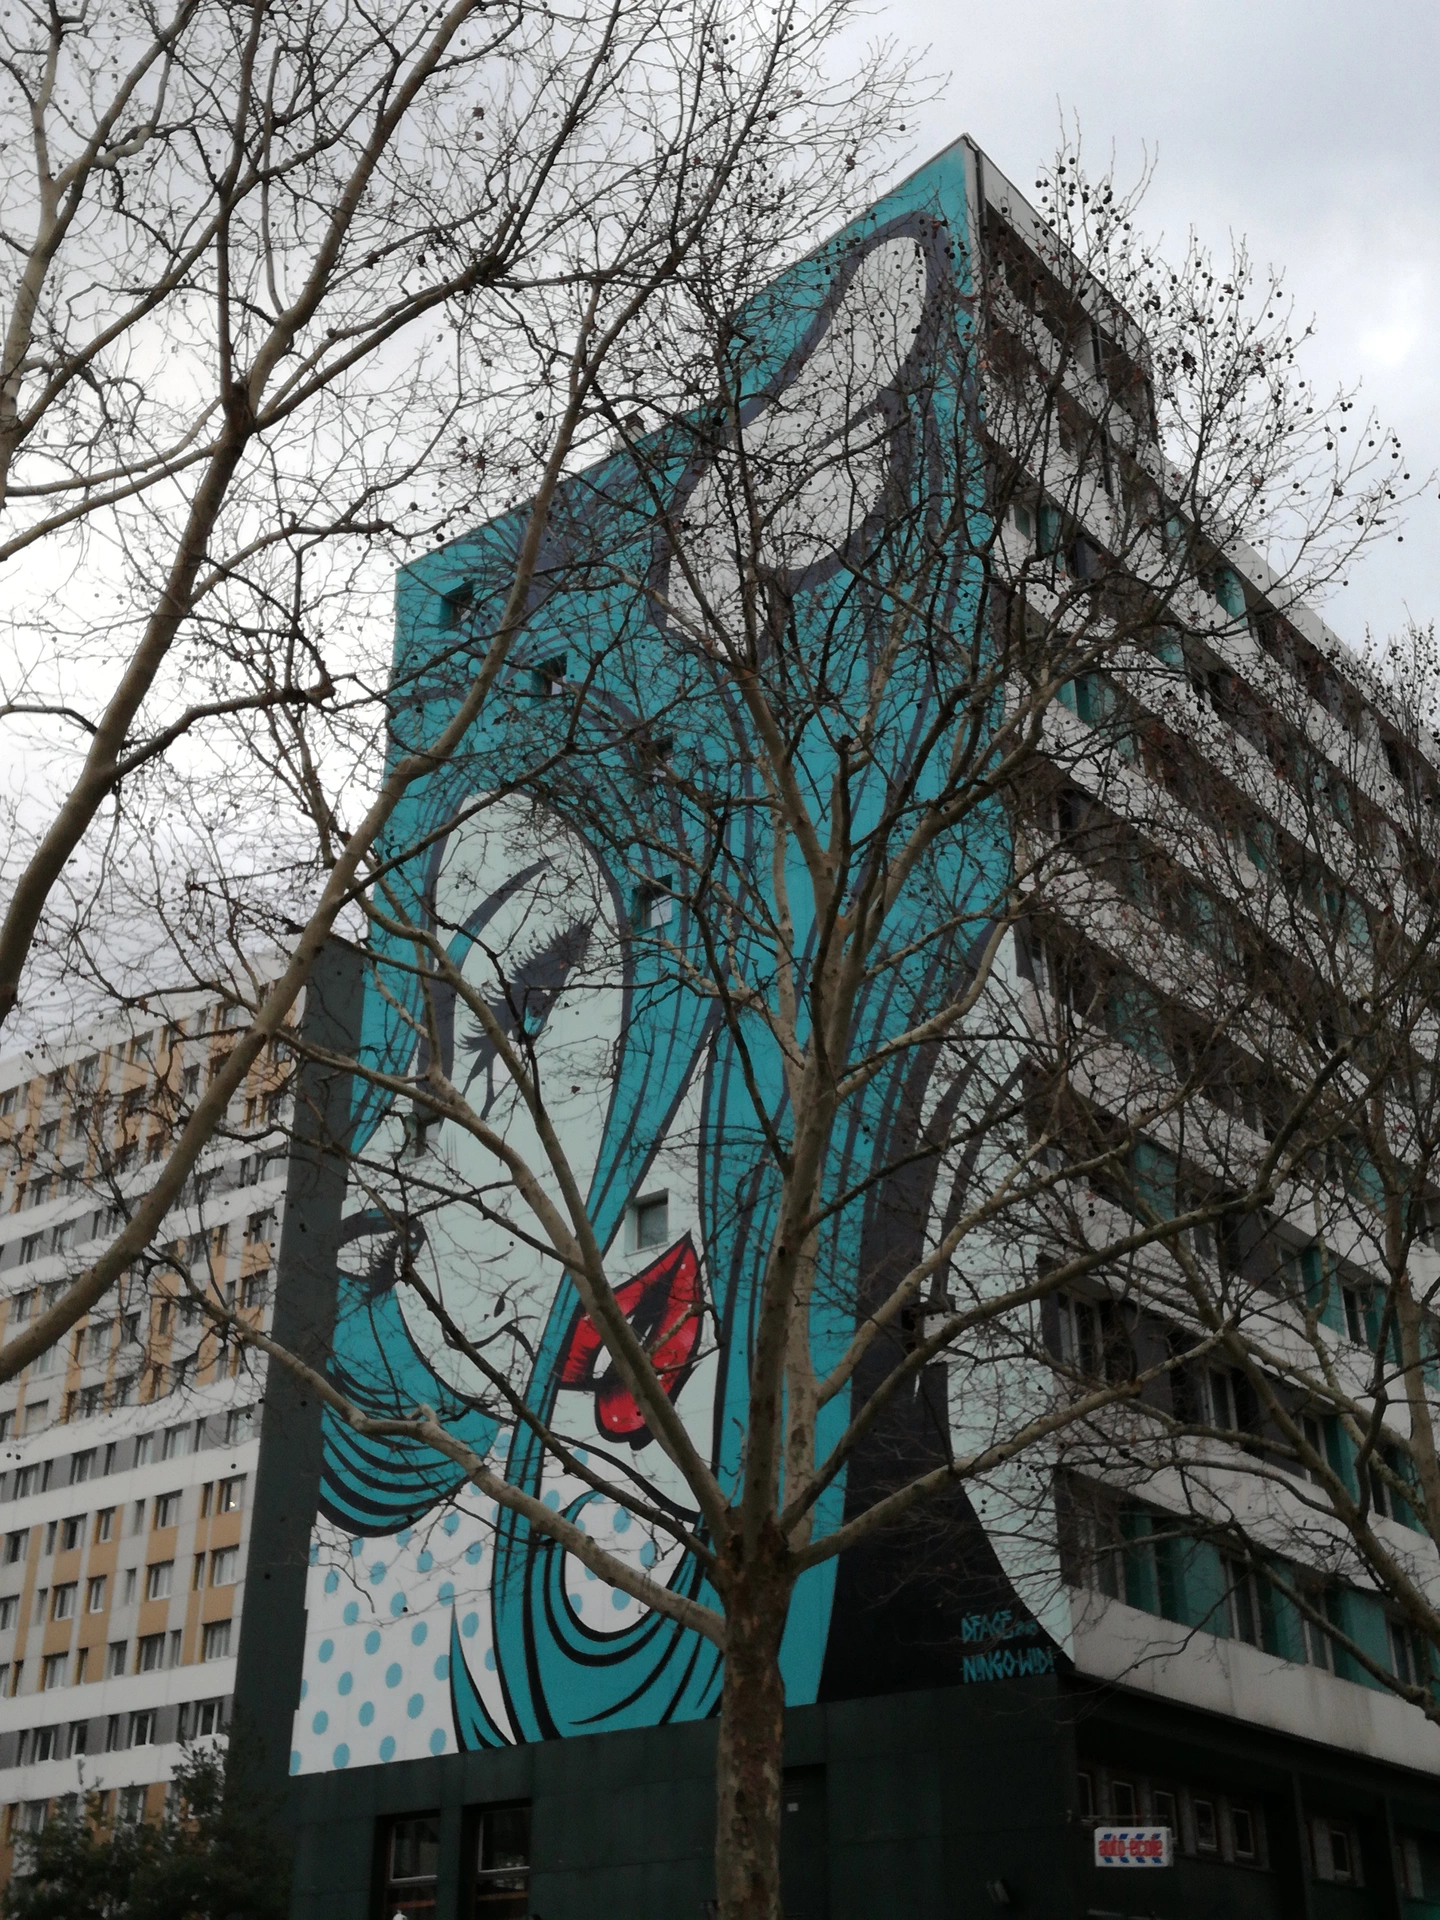 Oeuvre de Street Art réalisée par D*Face à Paris